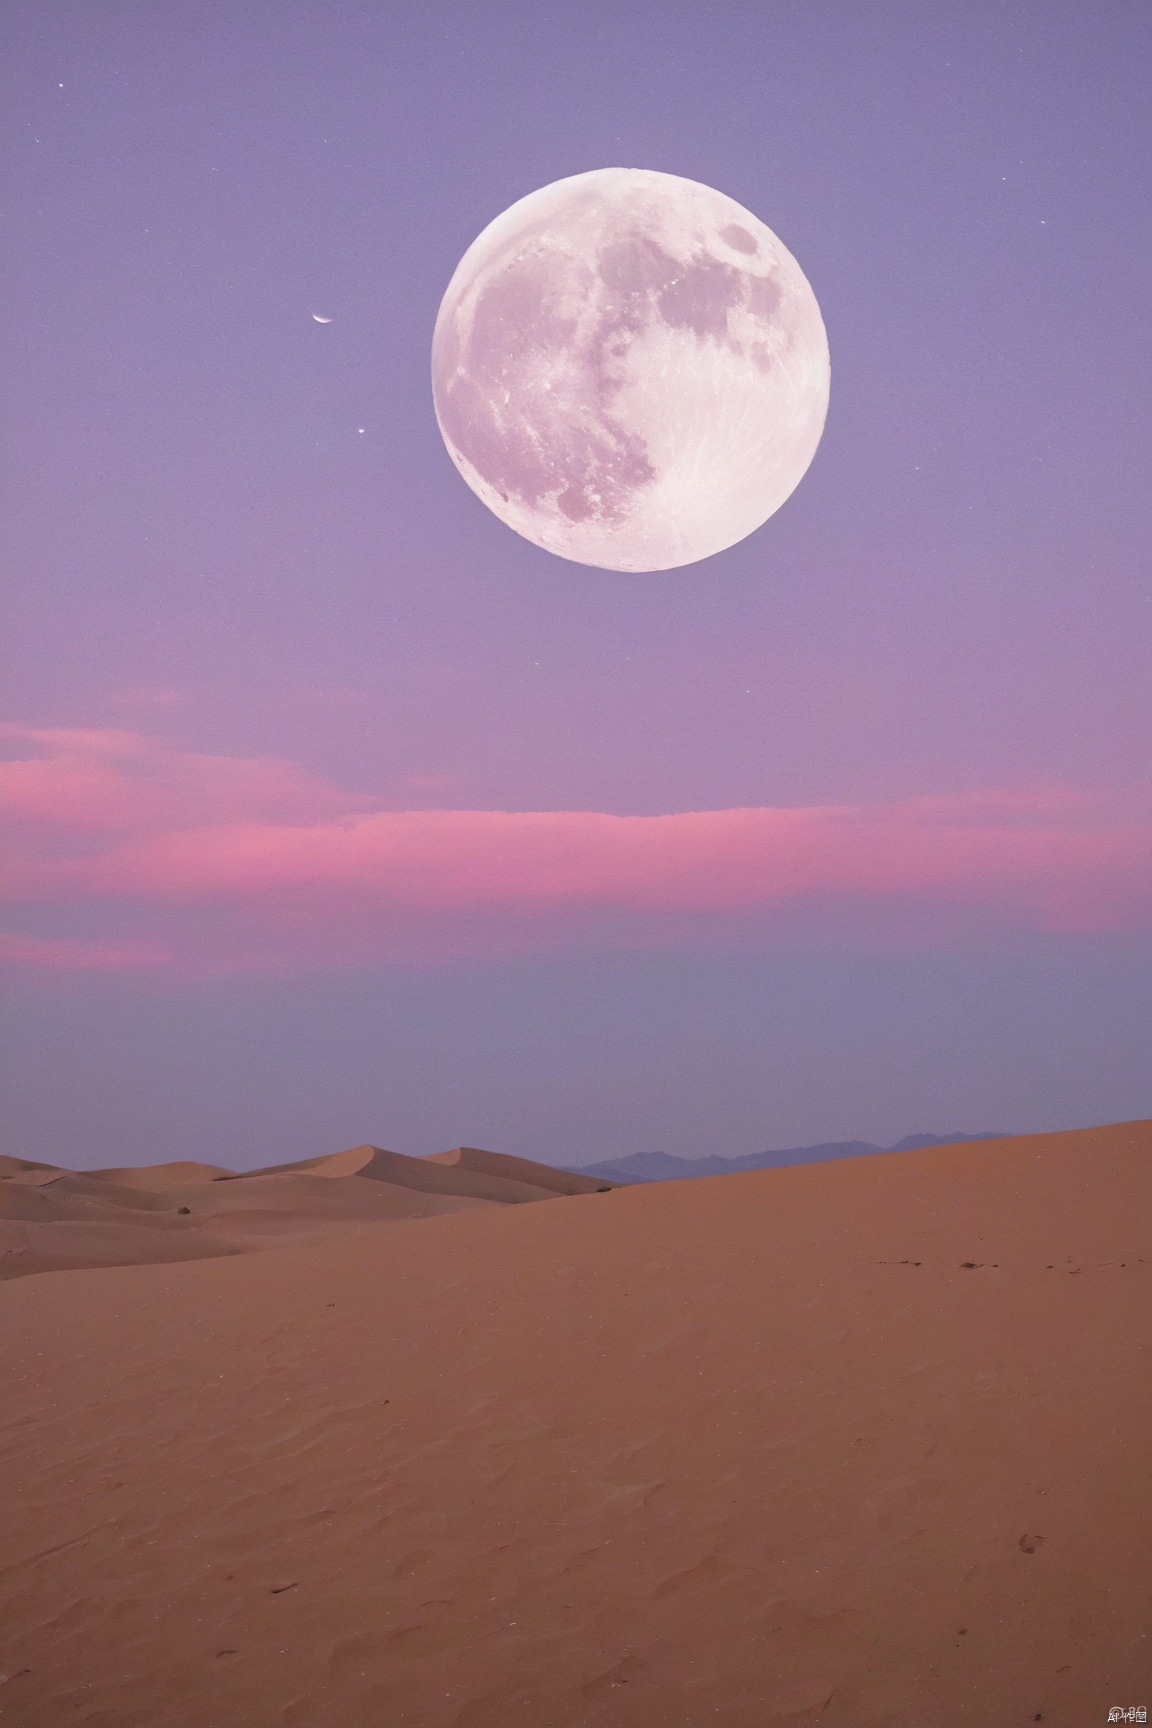 desert_sky,1girl,full moon,scenery,desert,pink-purple sky,star,more detail XL,xxmixgirl, xxmix_girl, monkren, qingyi, 